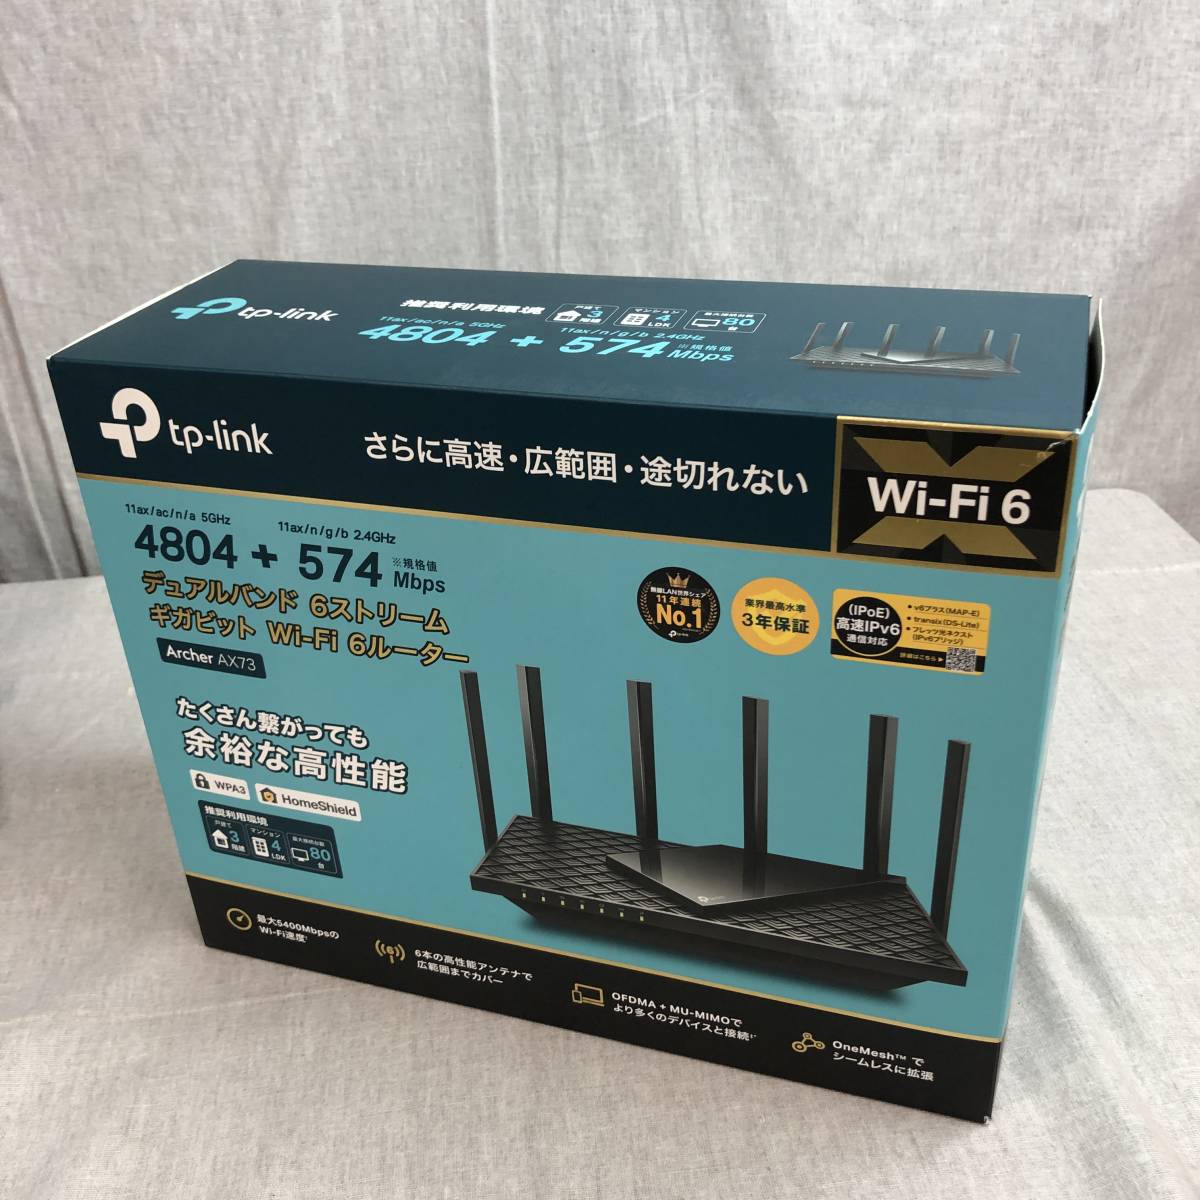 TP-Link WiFi ルーター WiFi6 PS5 対応 無線LAN 11ax AX5400 4804 Mbps (5 GHz) 574  Mbps (2.4 GHz) OneMesh対応 Archer AX73/A